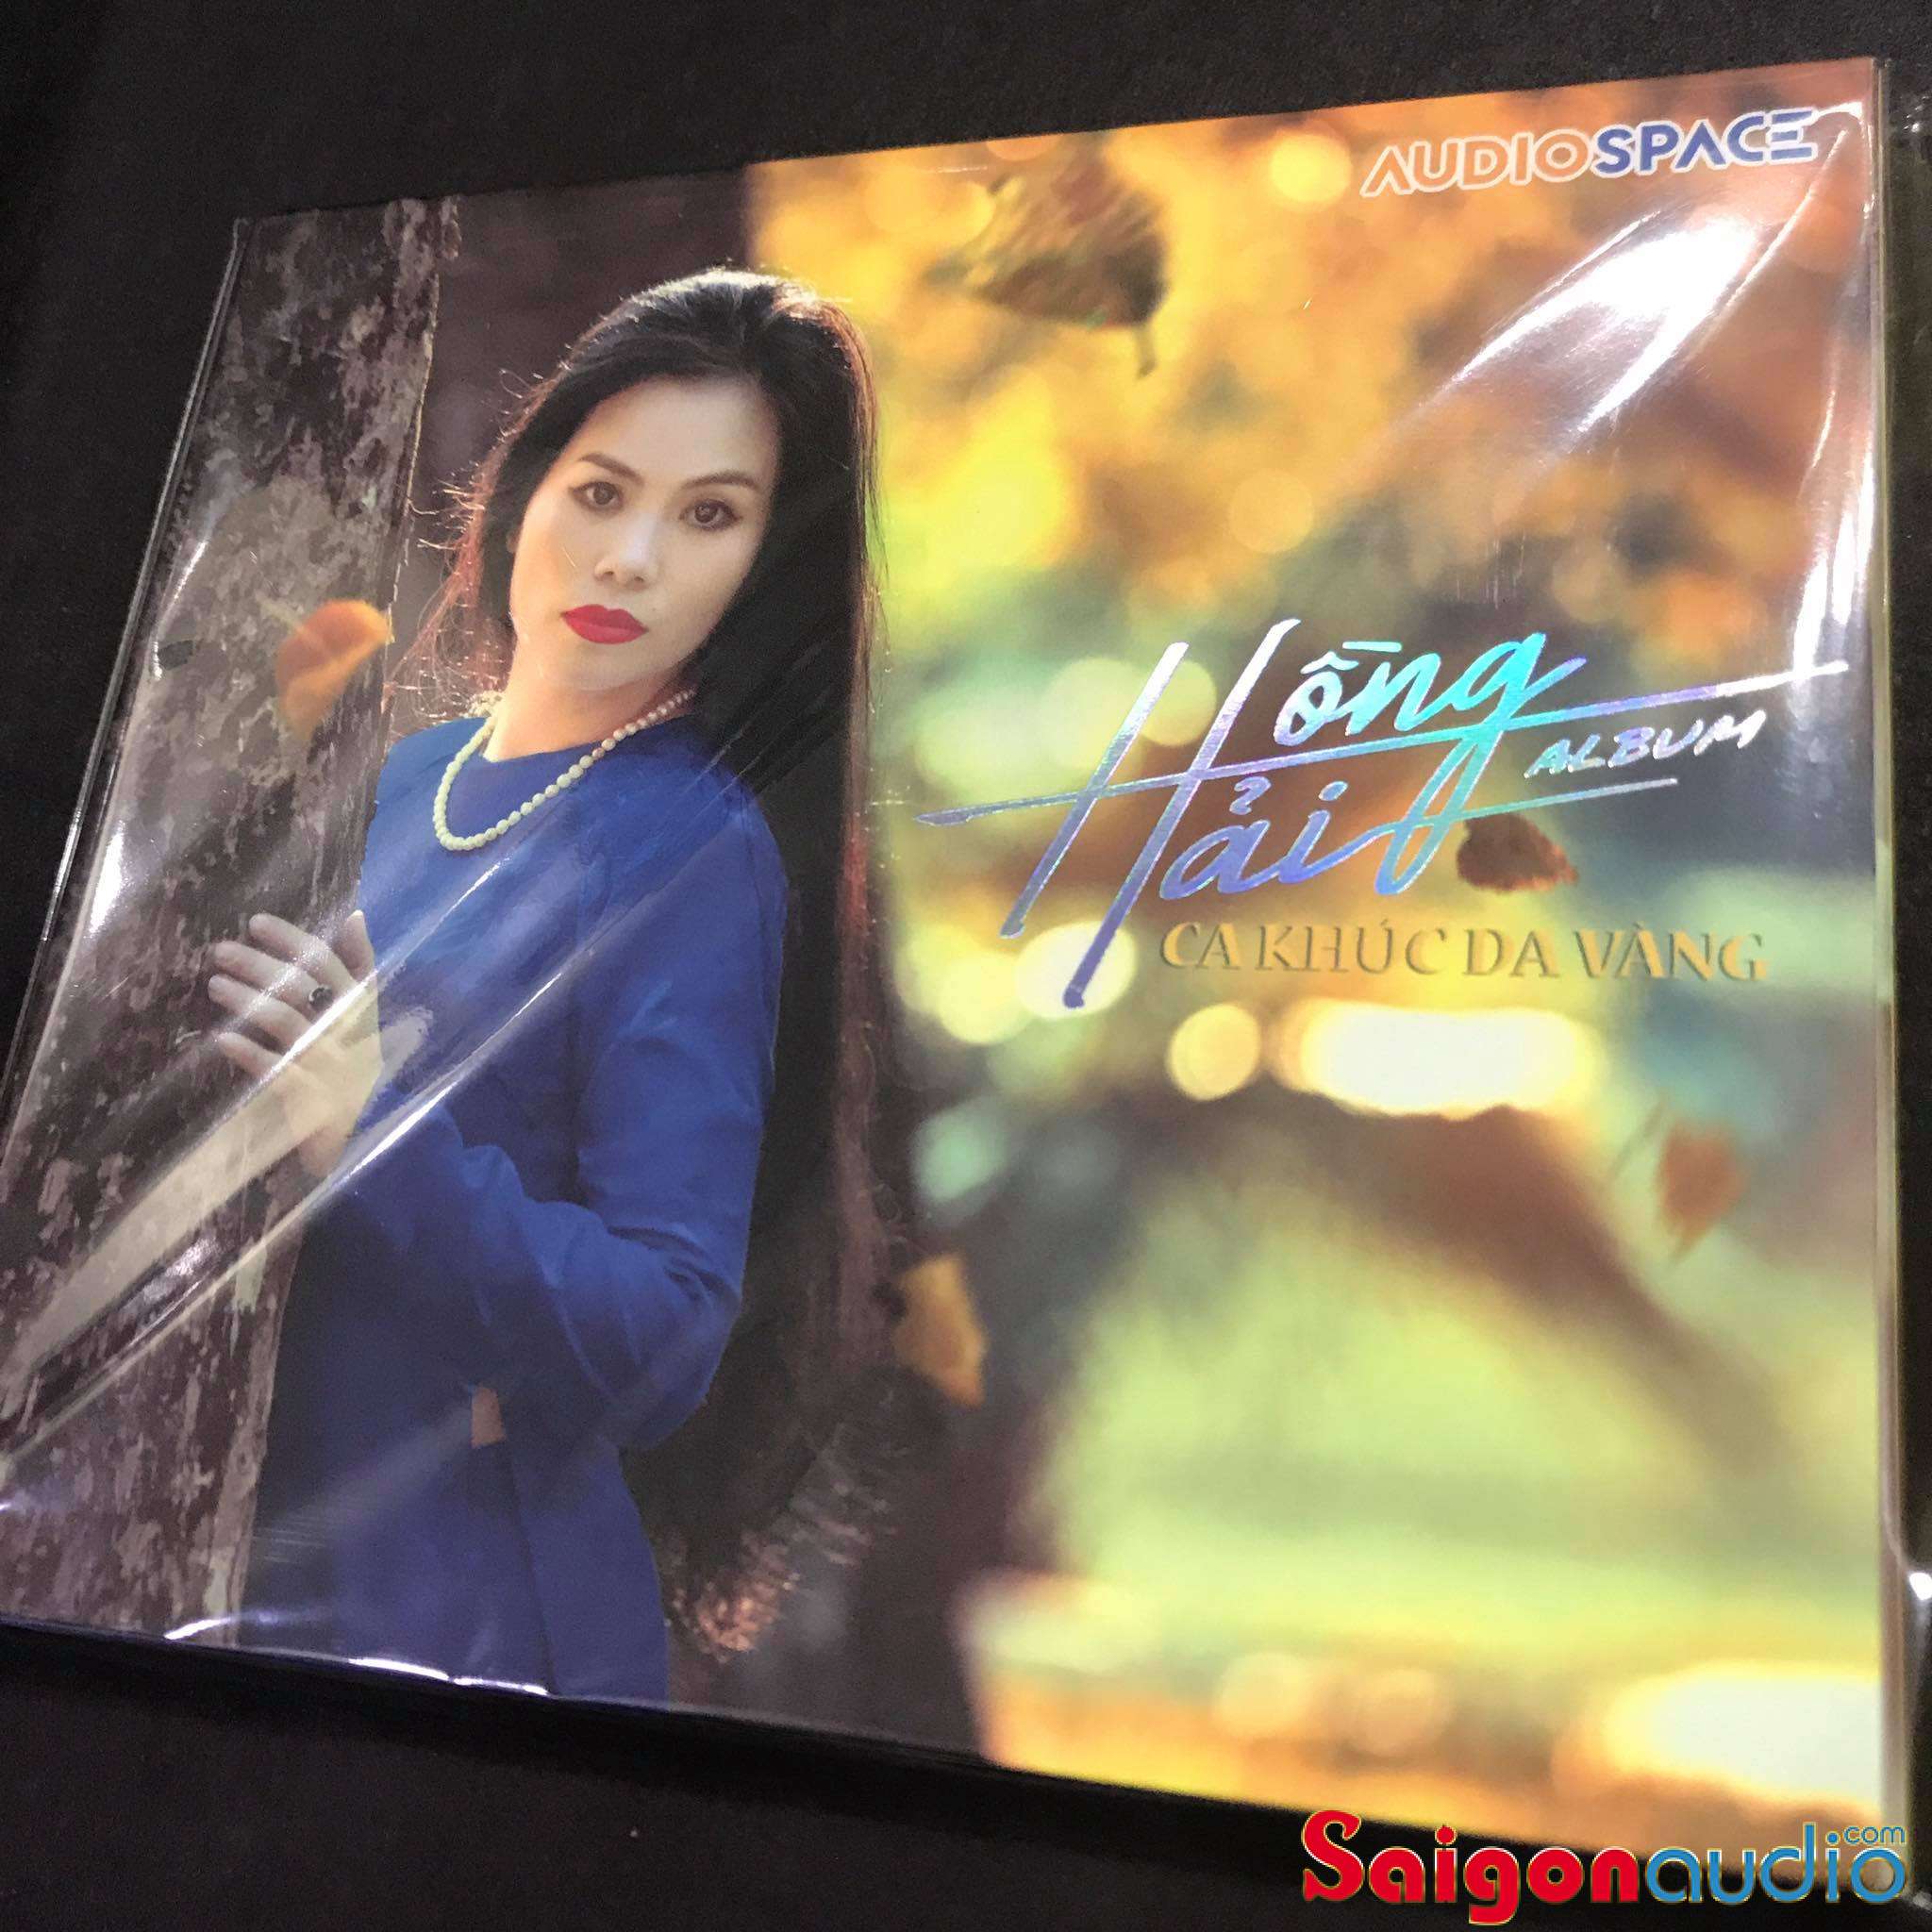 Đĩa CD gốc Hồng Hải - Ca Khúc Da Vàng (Free ship khi mua 2 đĩa CD cùng hoặc khác loại)